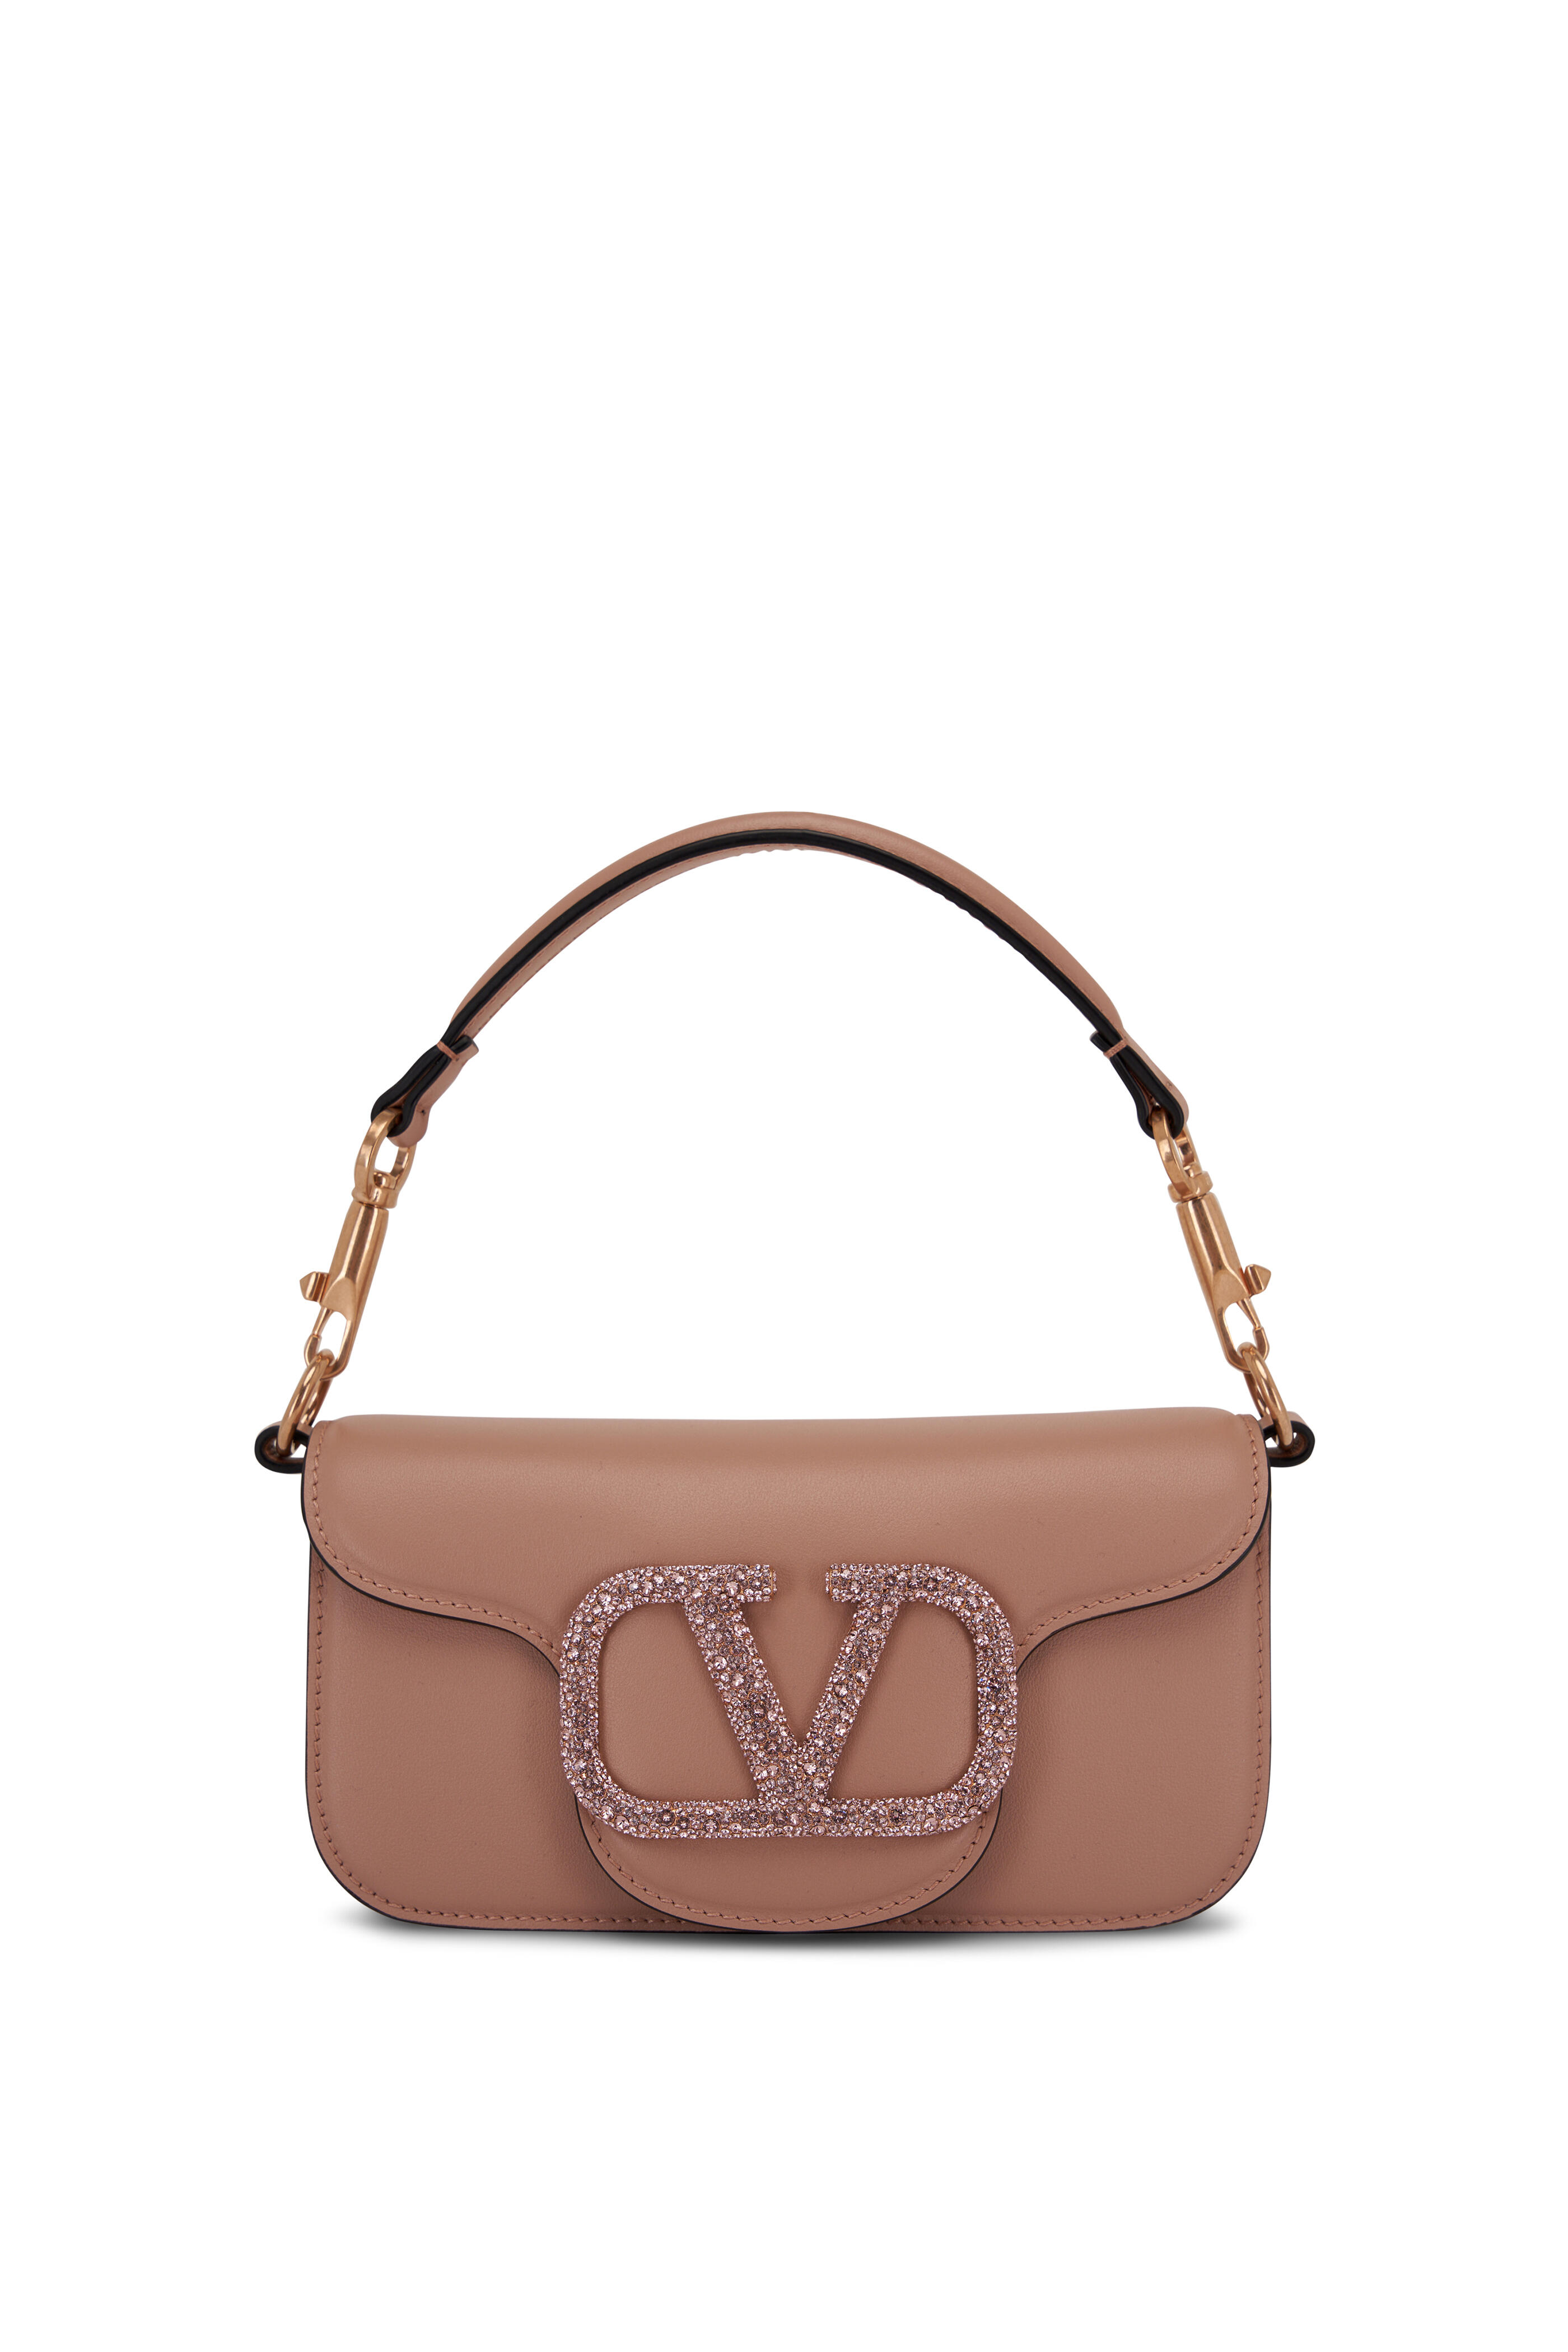 Valentino Garavani Women's Designer Clutches & Pouch Bags